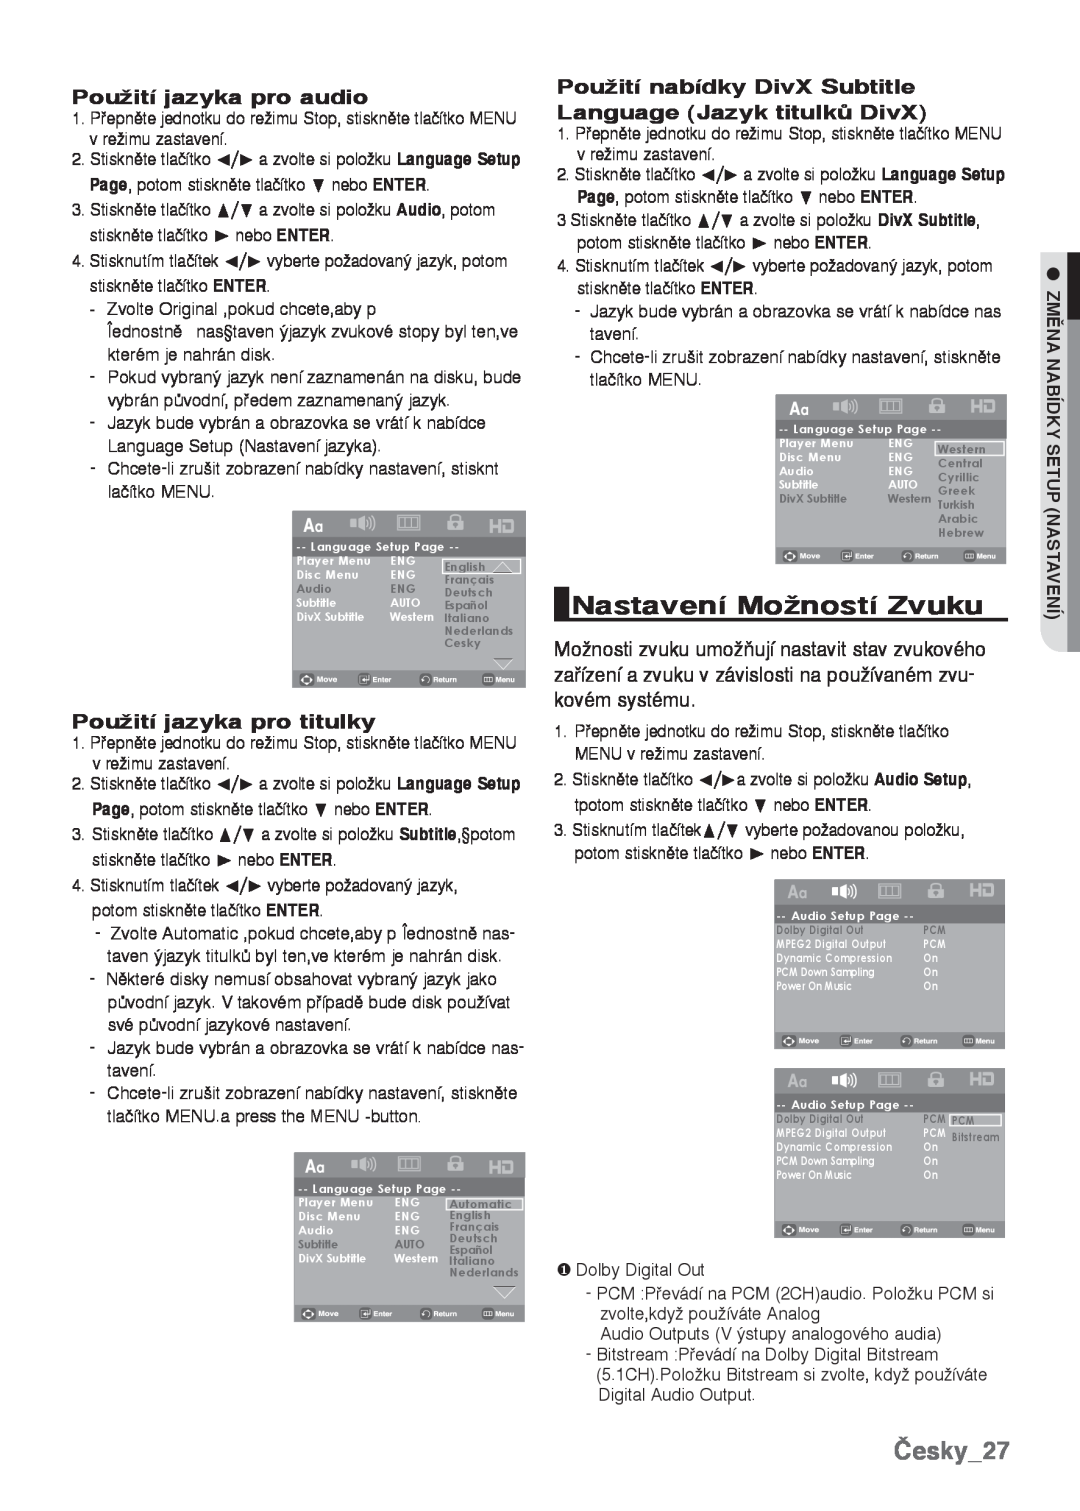 Samsung DVD-H1080/EDC manual Nastavení MoÏností Zvuku, Česky27, PouÏití jazyka pro audio, PouÏití jazyka pro titulky 